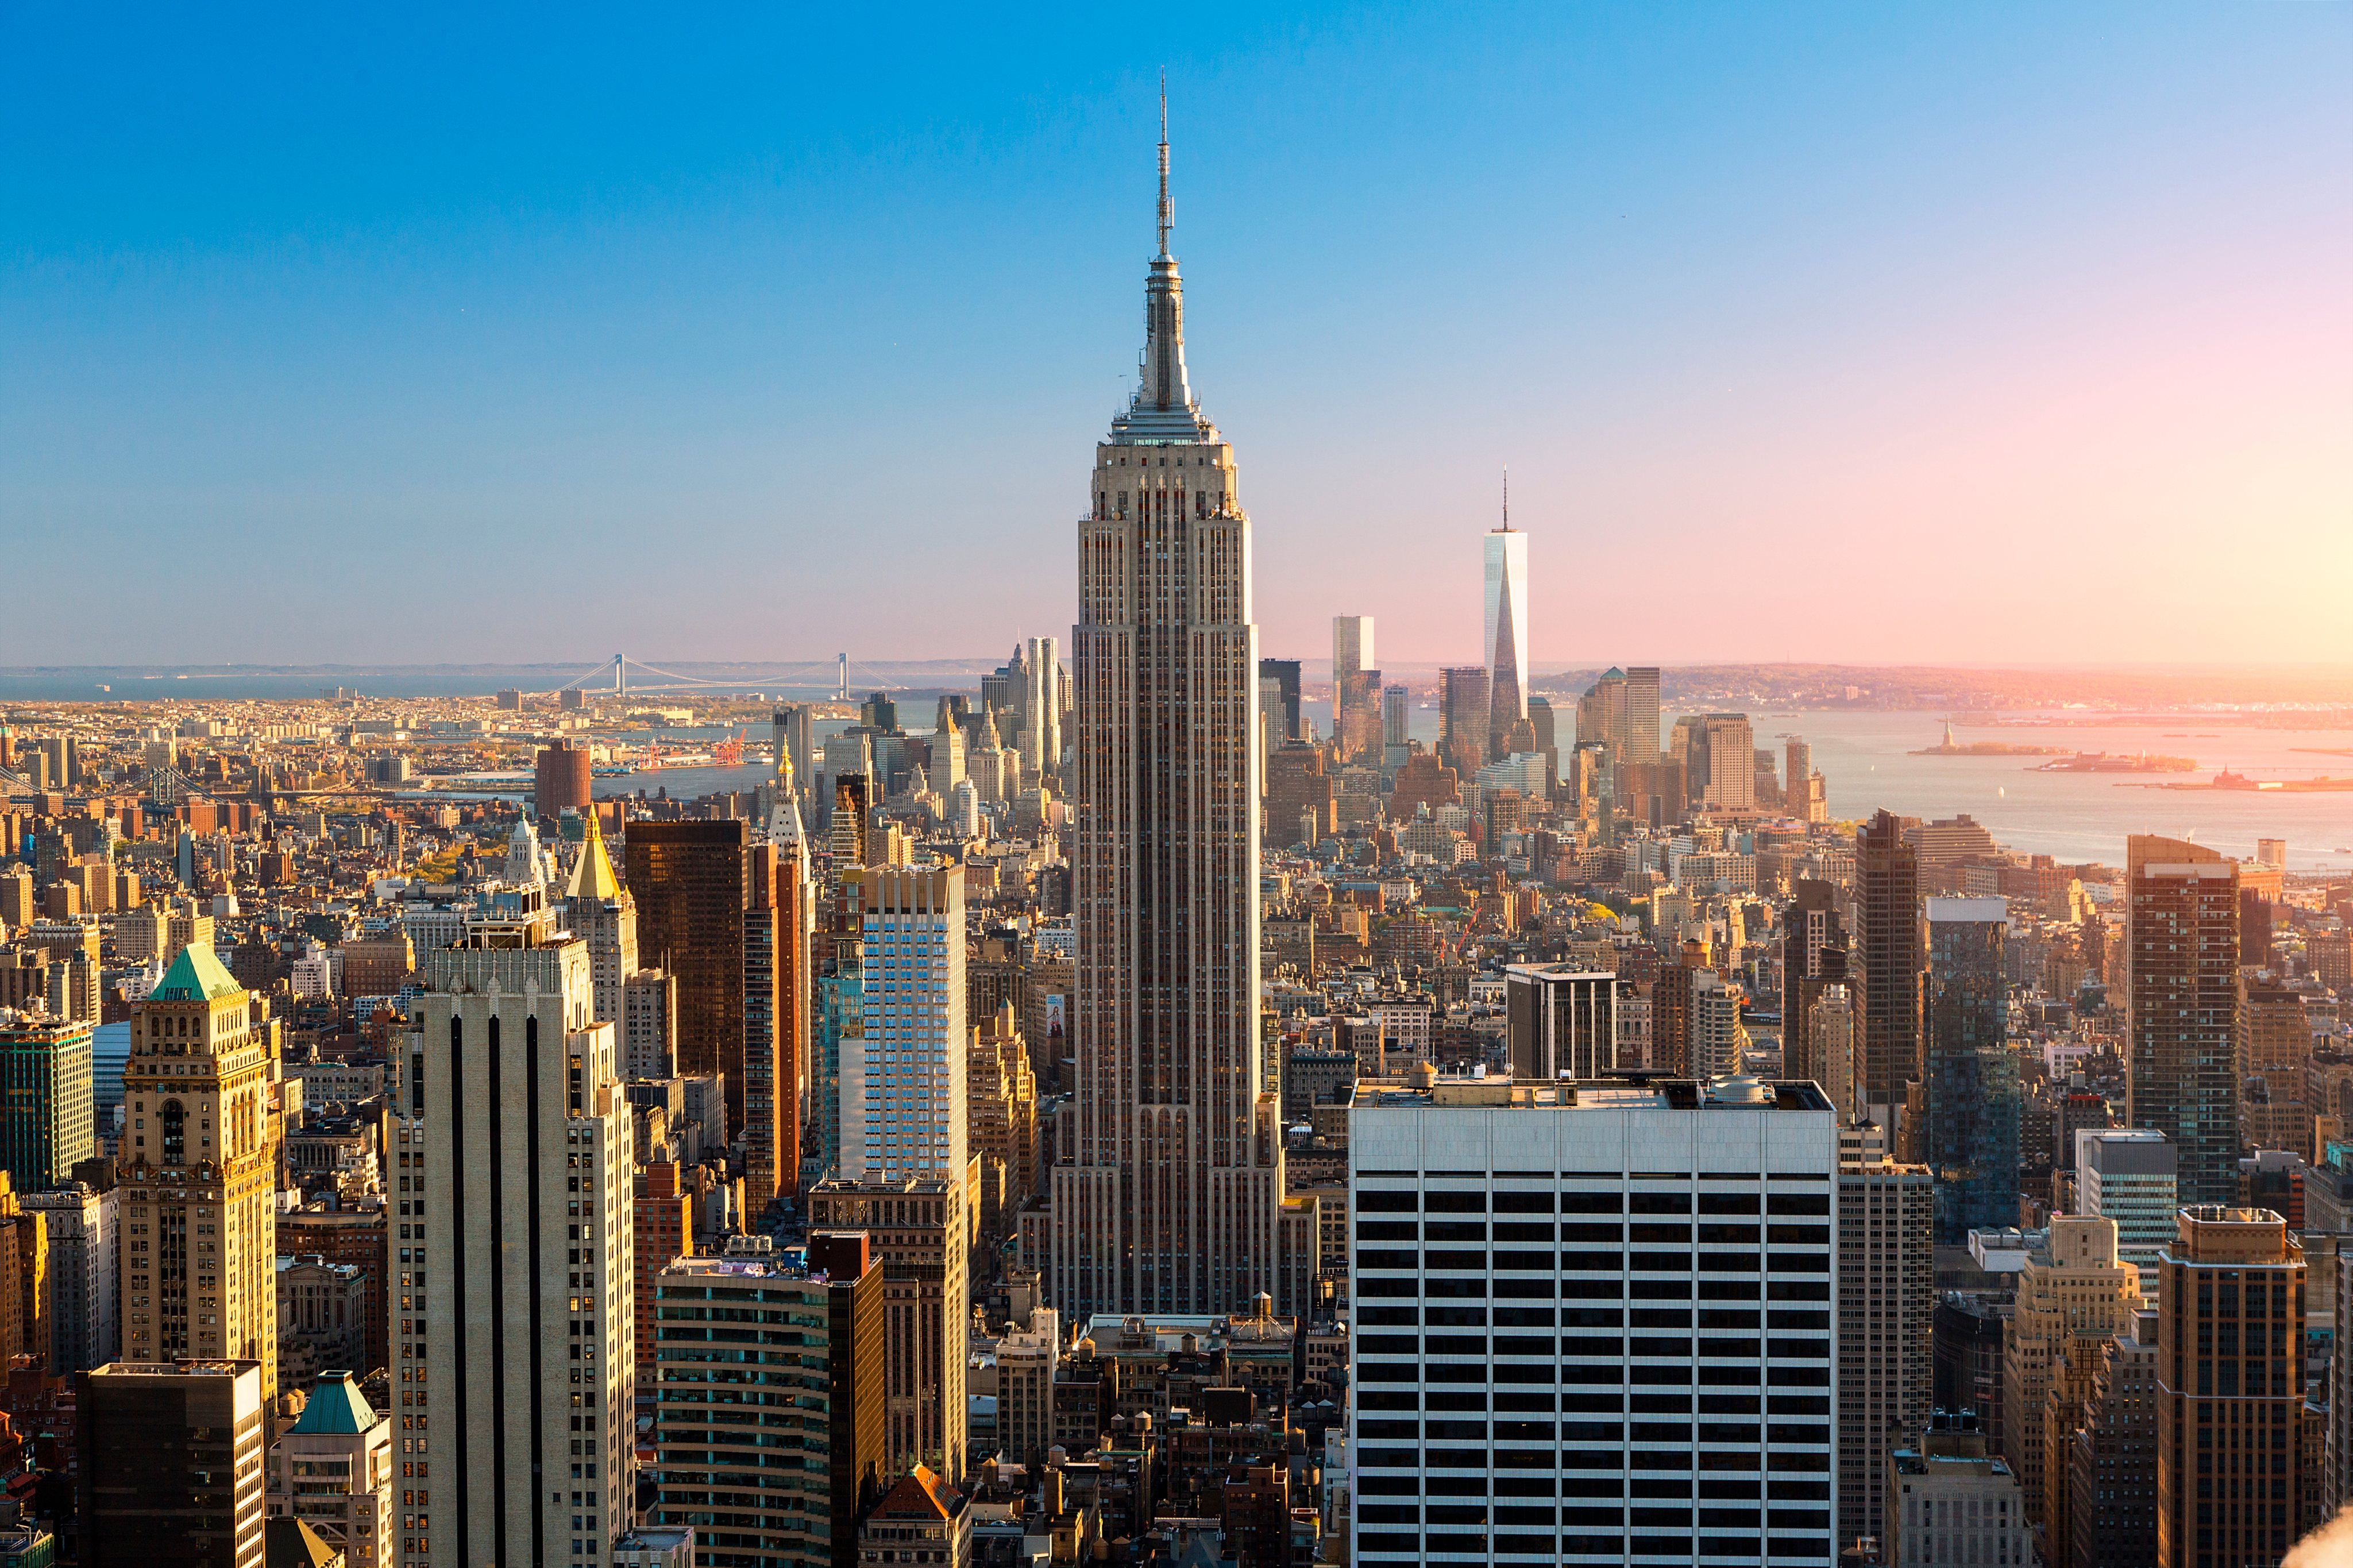 Índex das cidades com custo de vida mais elevado - Nova Iorque